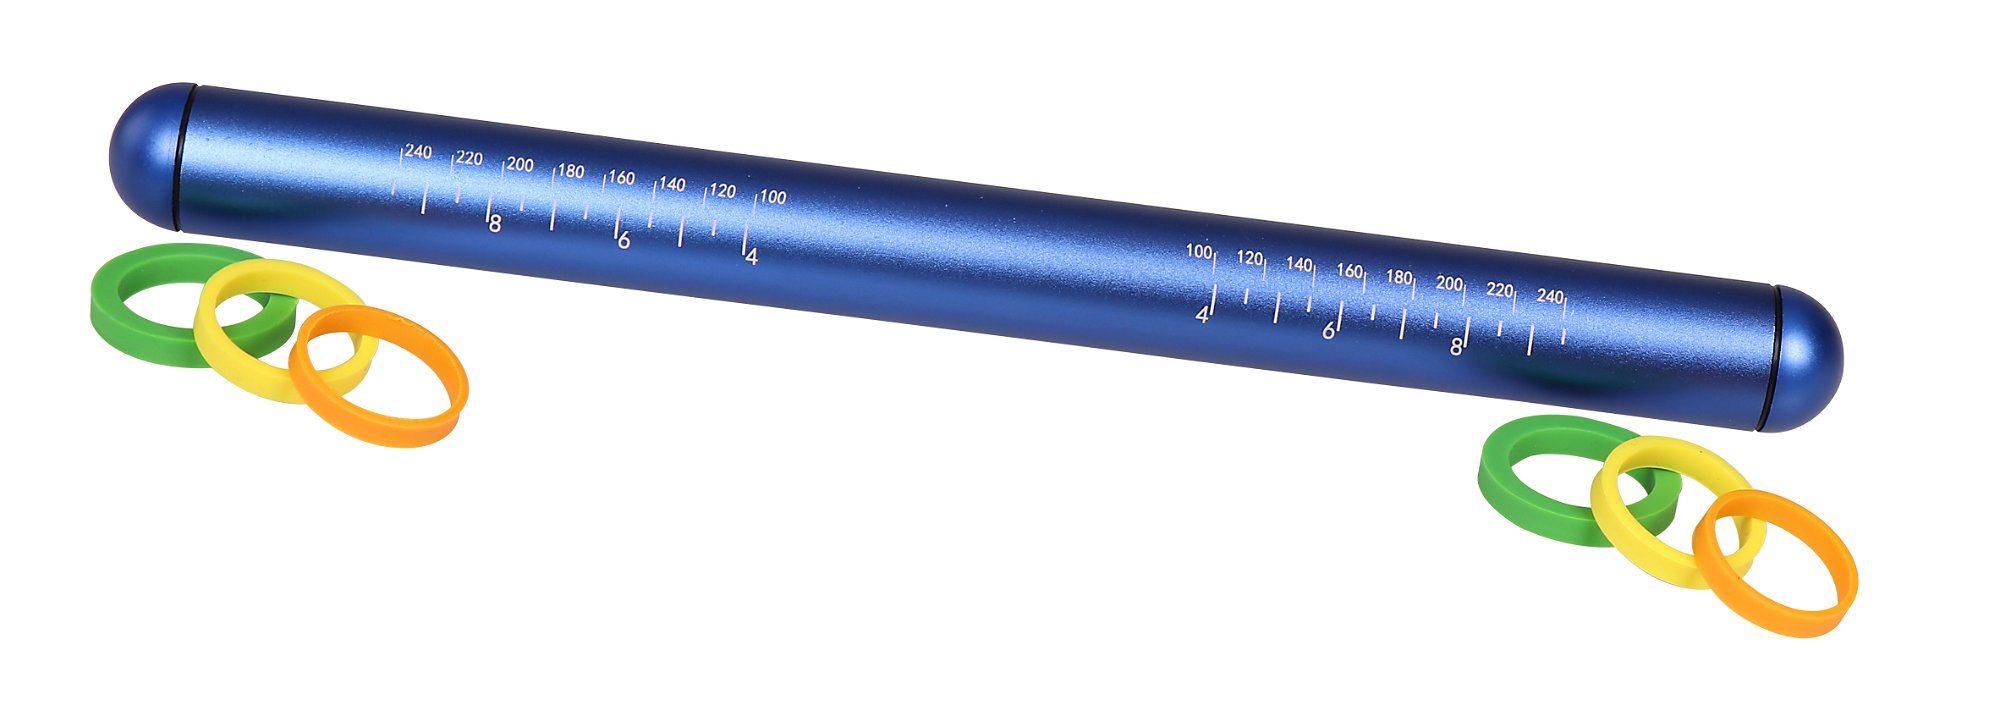 STONELINE® Teigroller mit 3 abnehmbaren Abstandshaltern, blau